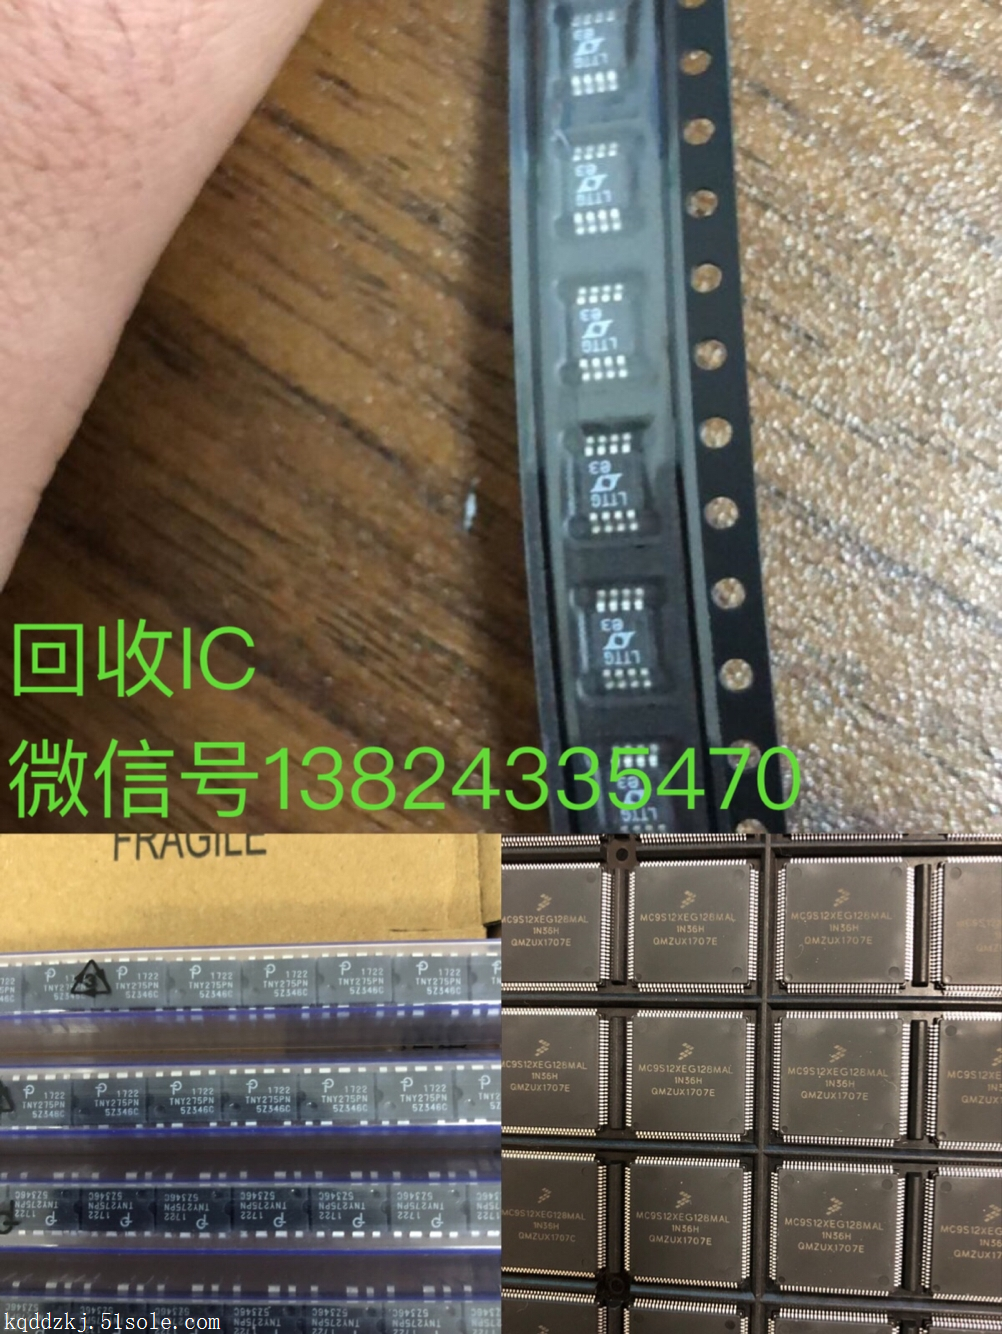 上海黄浦区回收IC电子呆料 收购手机IC IC电子呆料收购